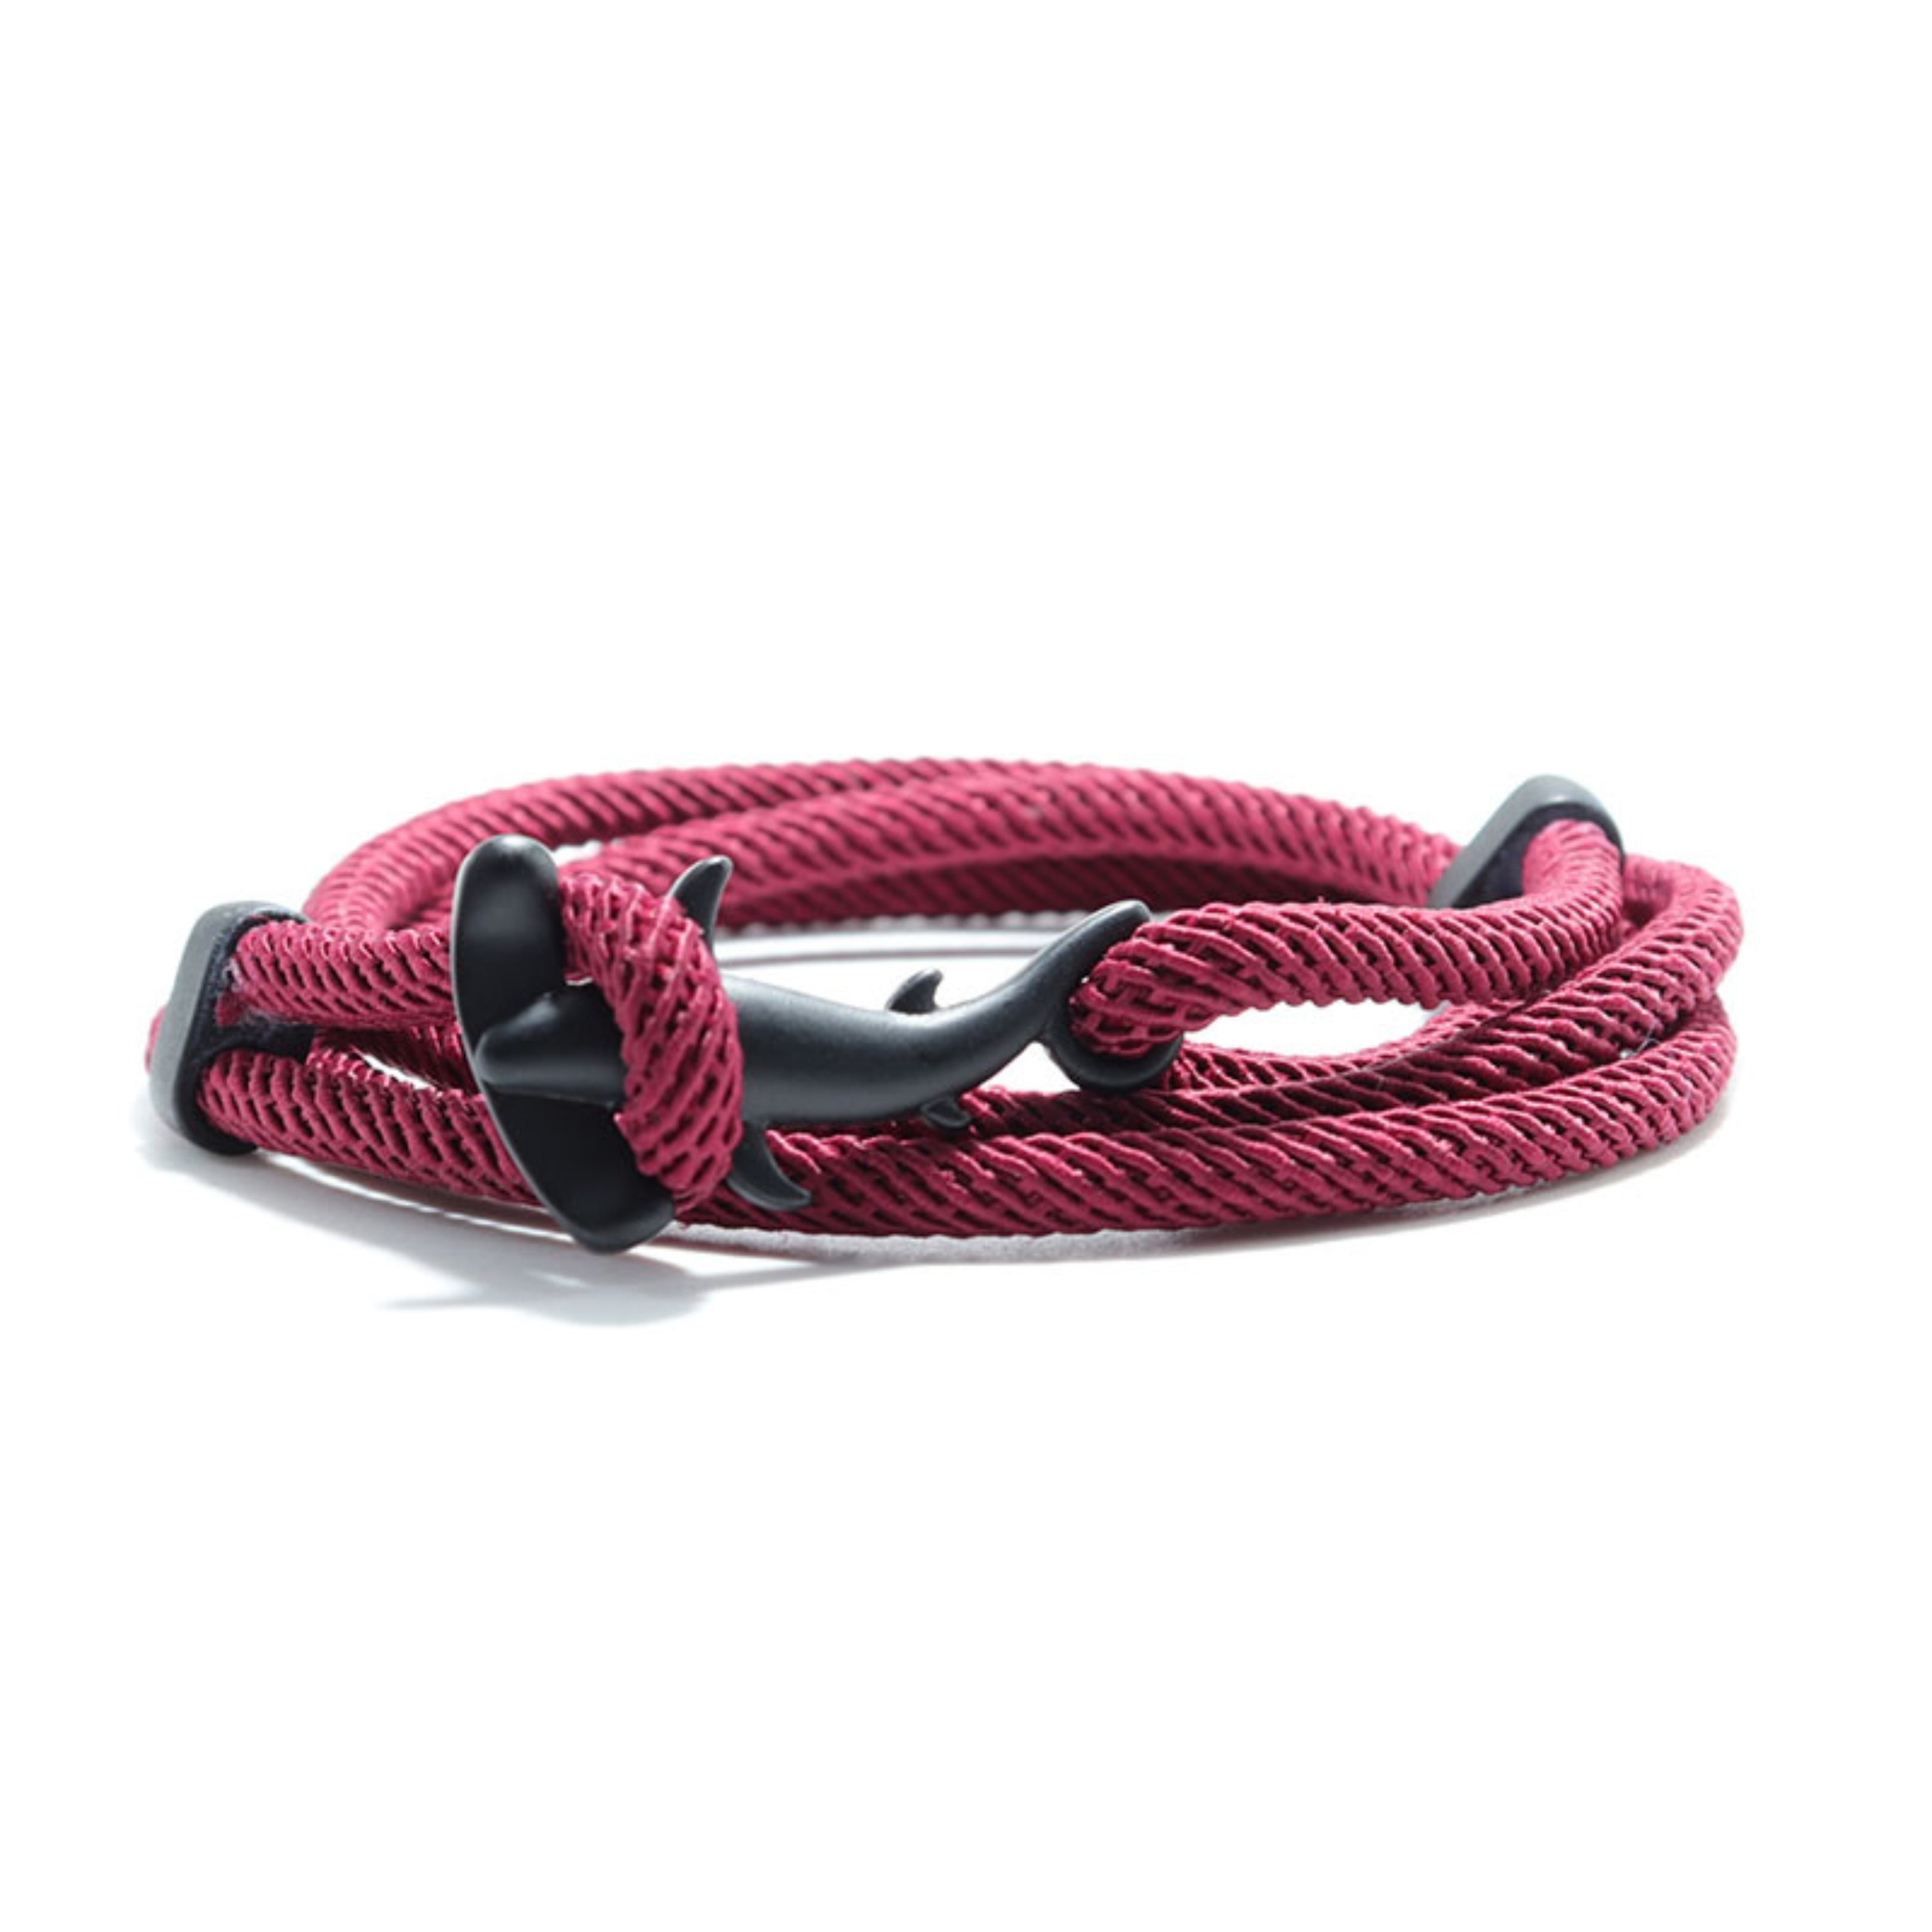 Shark-inspired adjustable double string bracelet